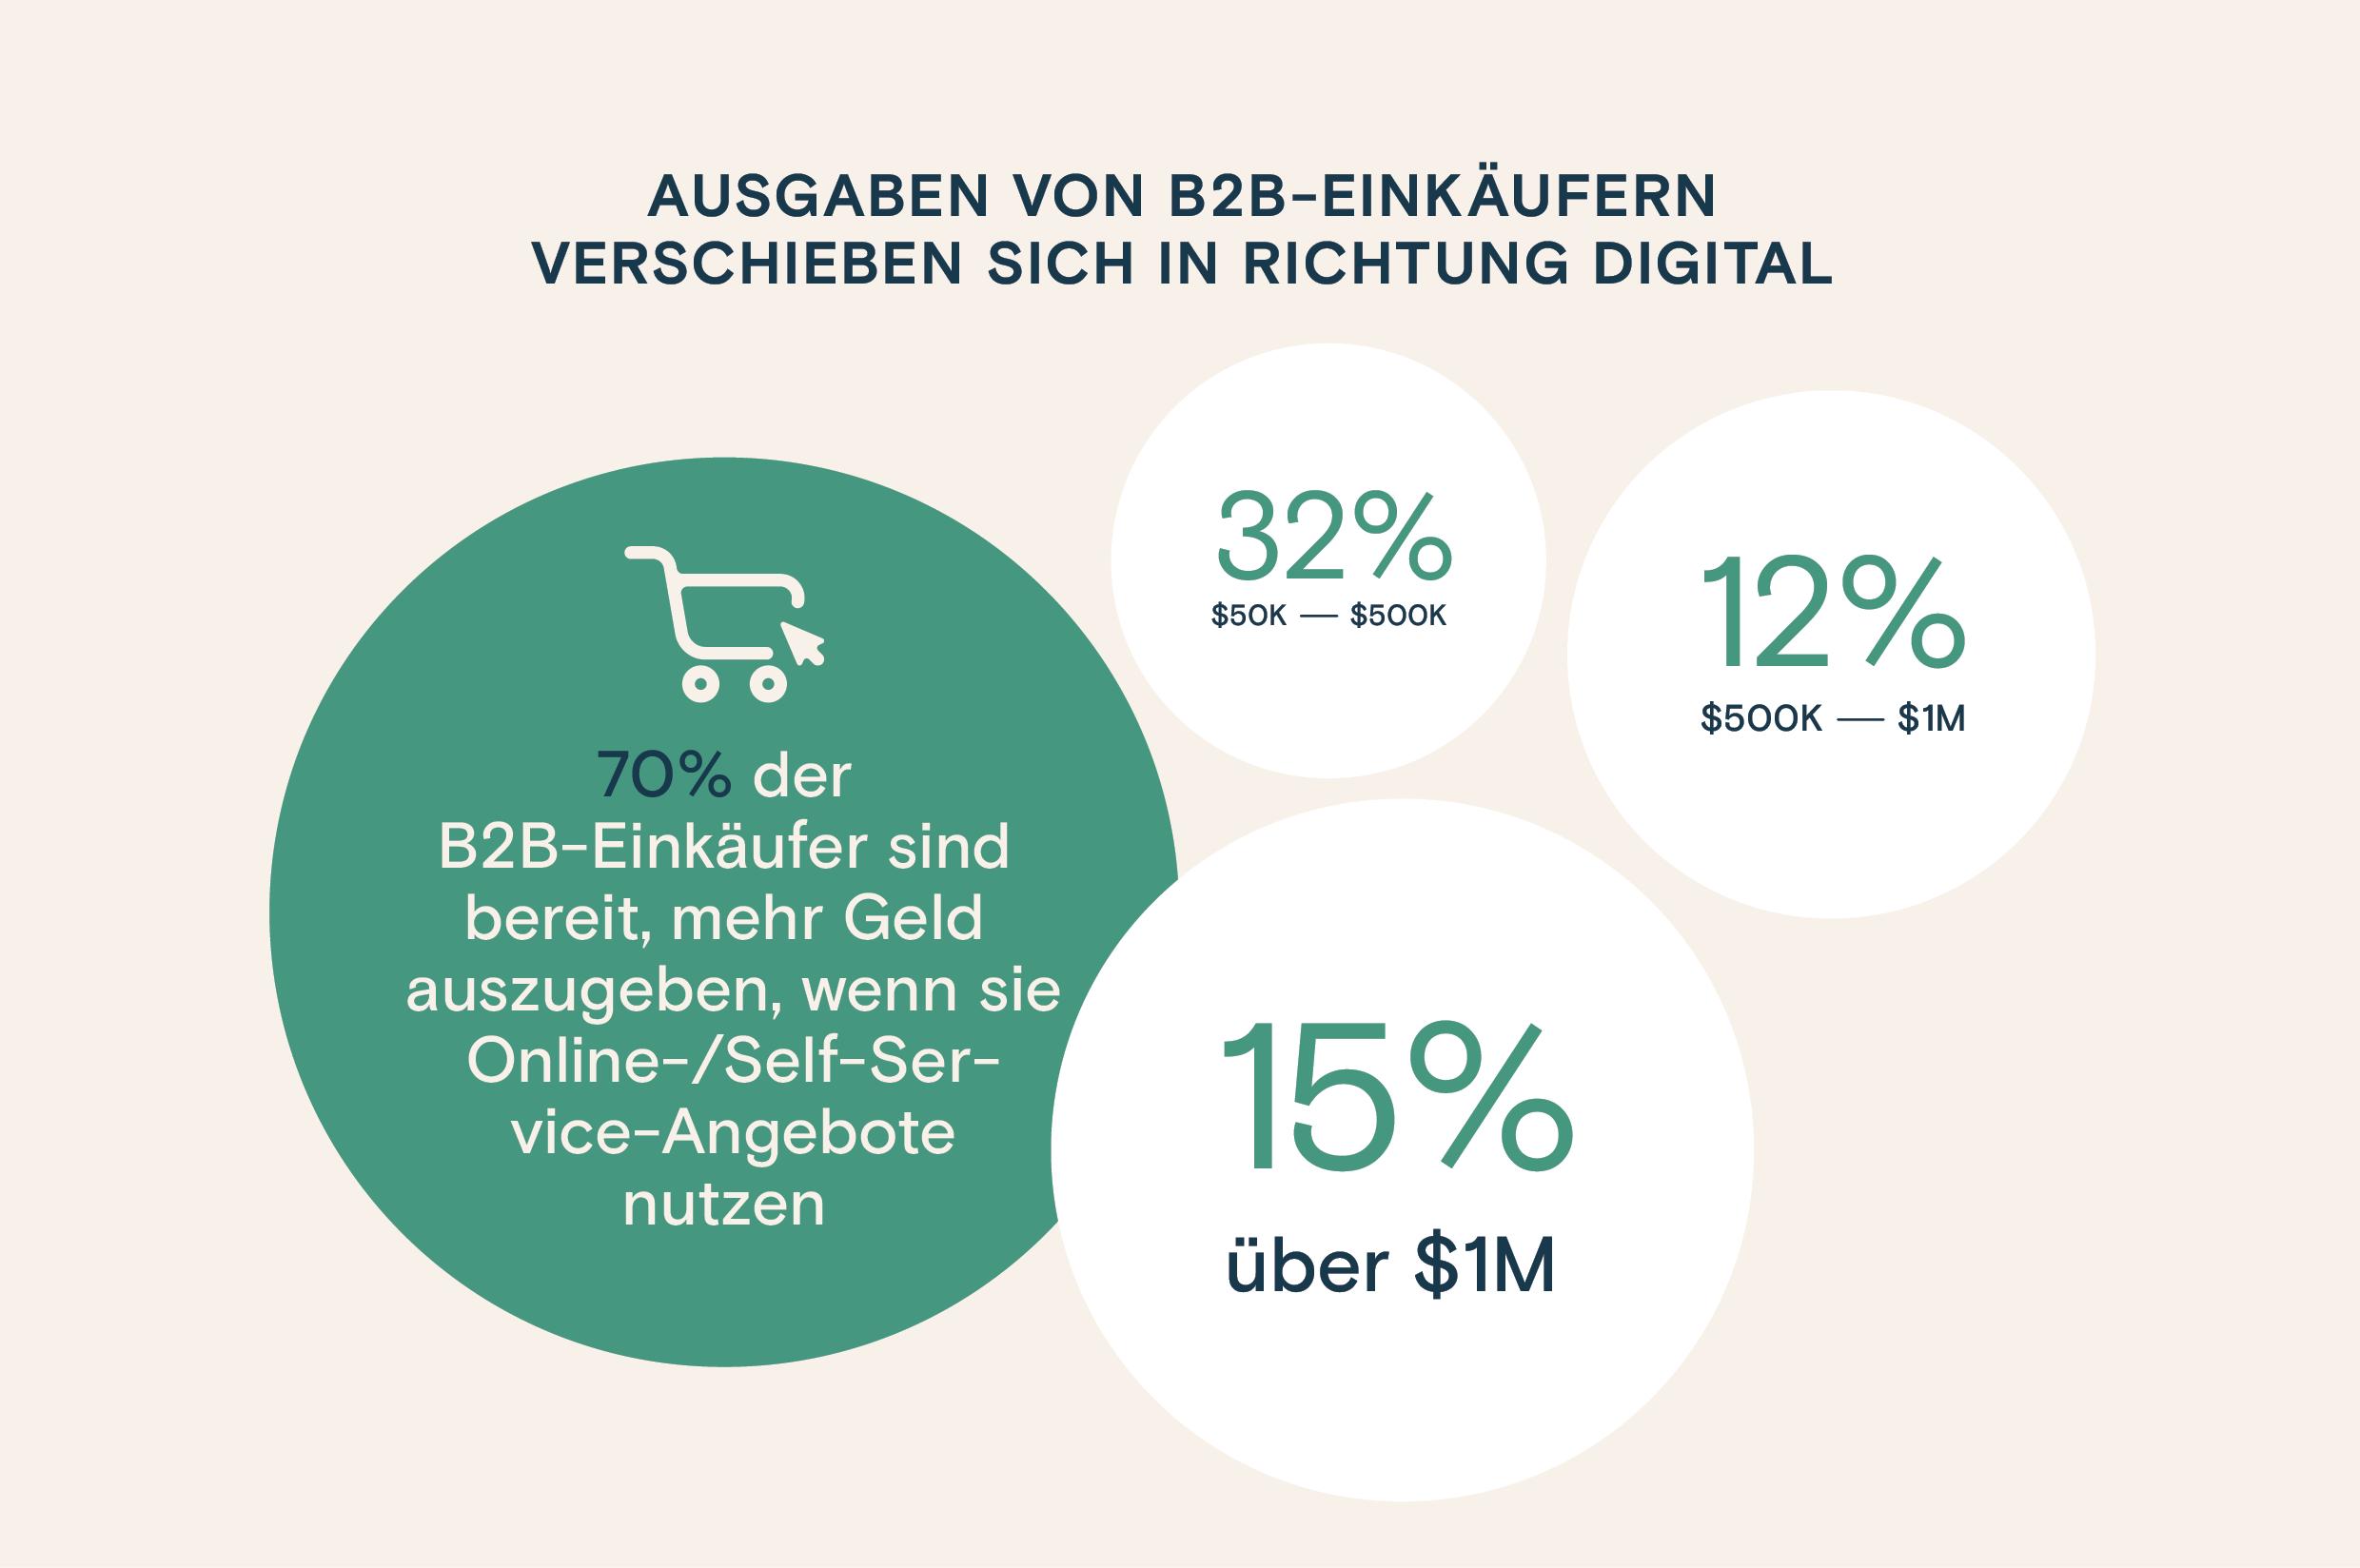 Infografik: Ausgaben von B2B-Einkäufern verschieben sich in Richtung digital